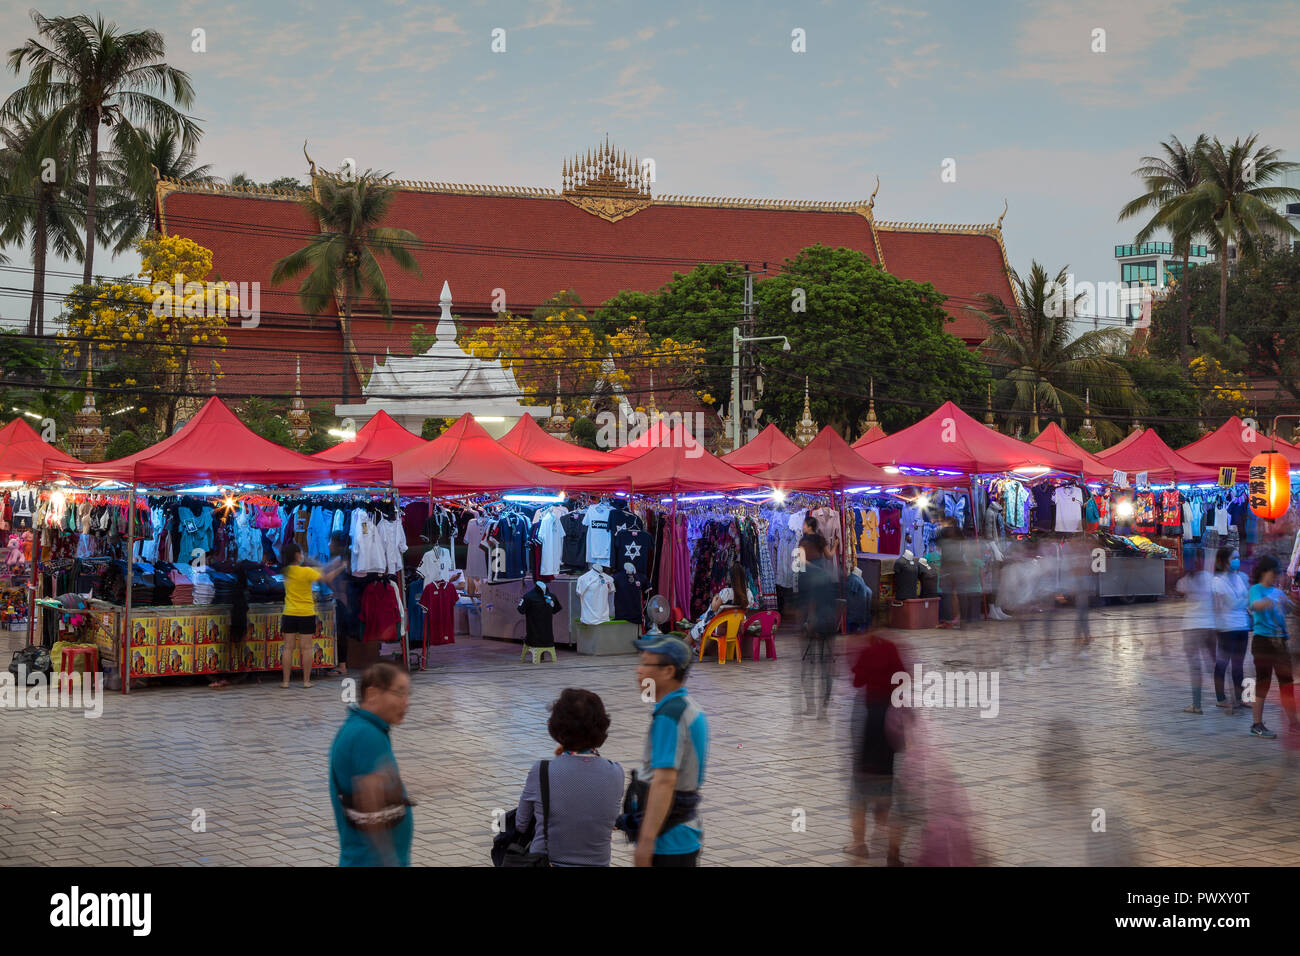 Persone e molte bancarelle piene di abiti al famoso mercato notturno di Vientiane, Laos, al tramonto. Wat Chanthaburi (Chanthaboury tempio è in background. Foto Stock